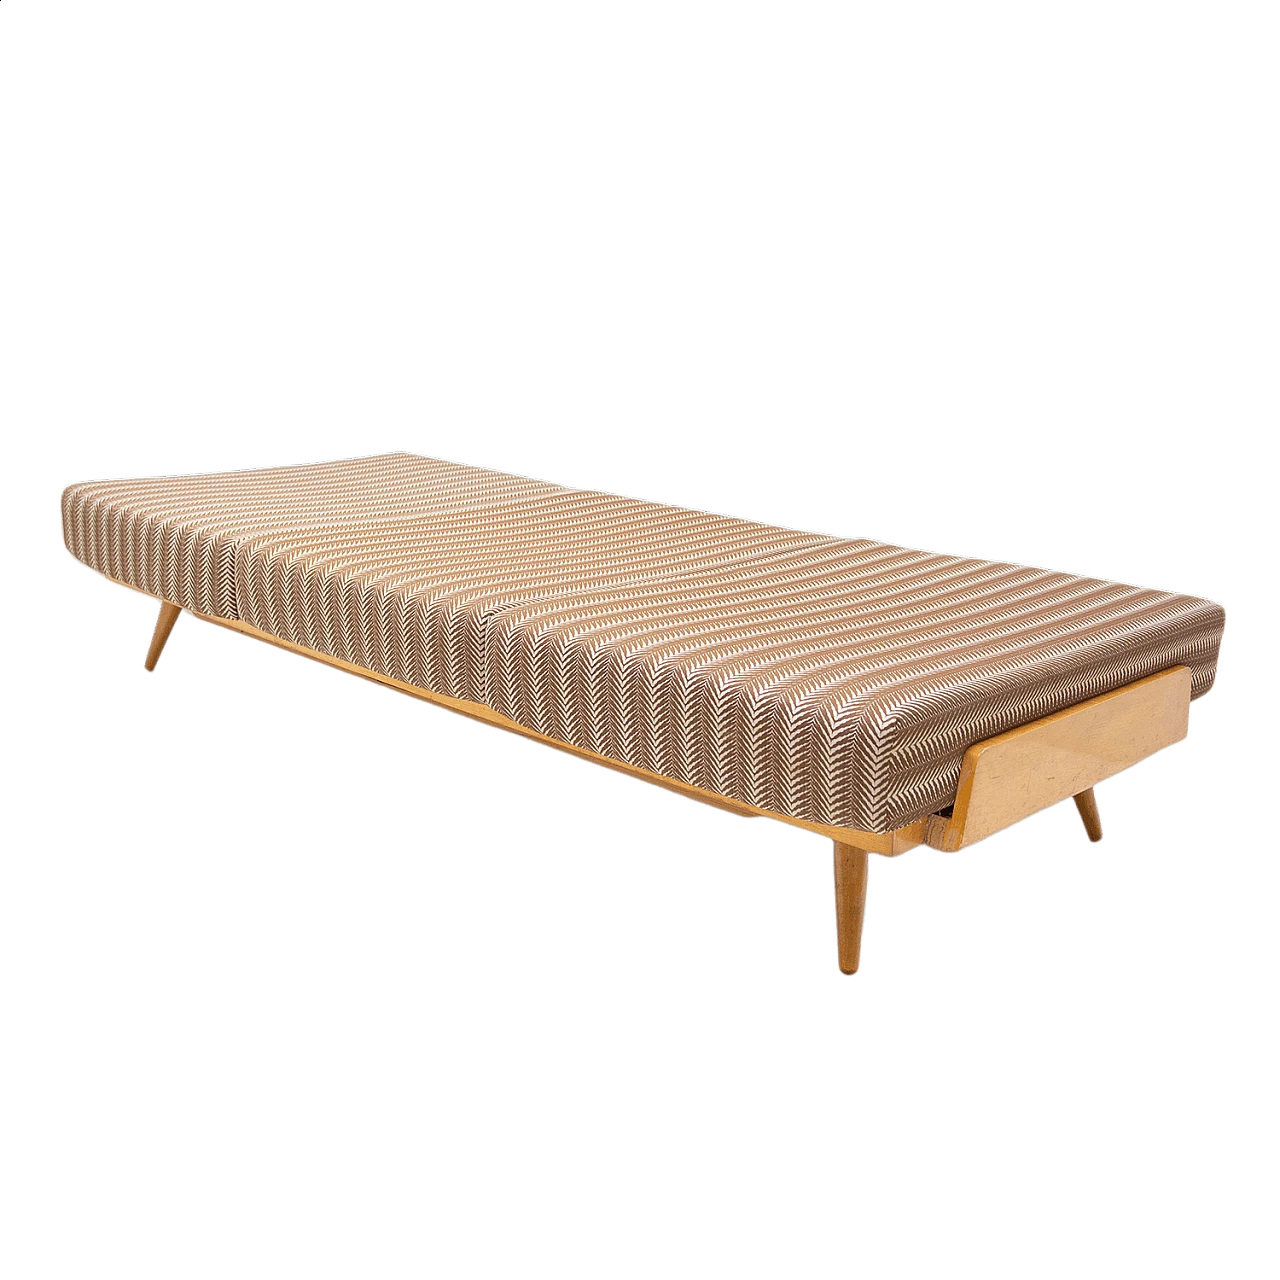 Single bed by František Jirák for Tatra furniture, 1970s 1477978